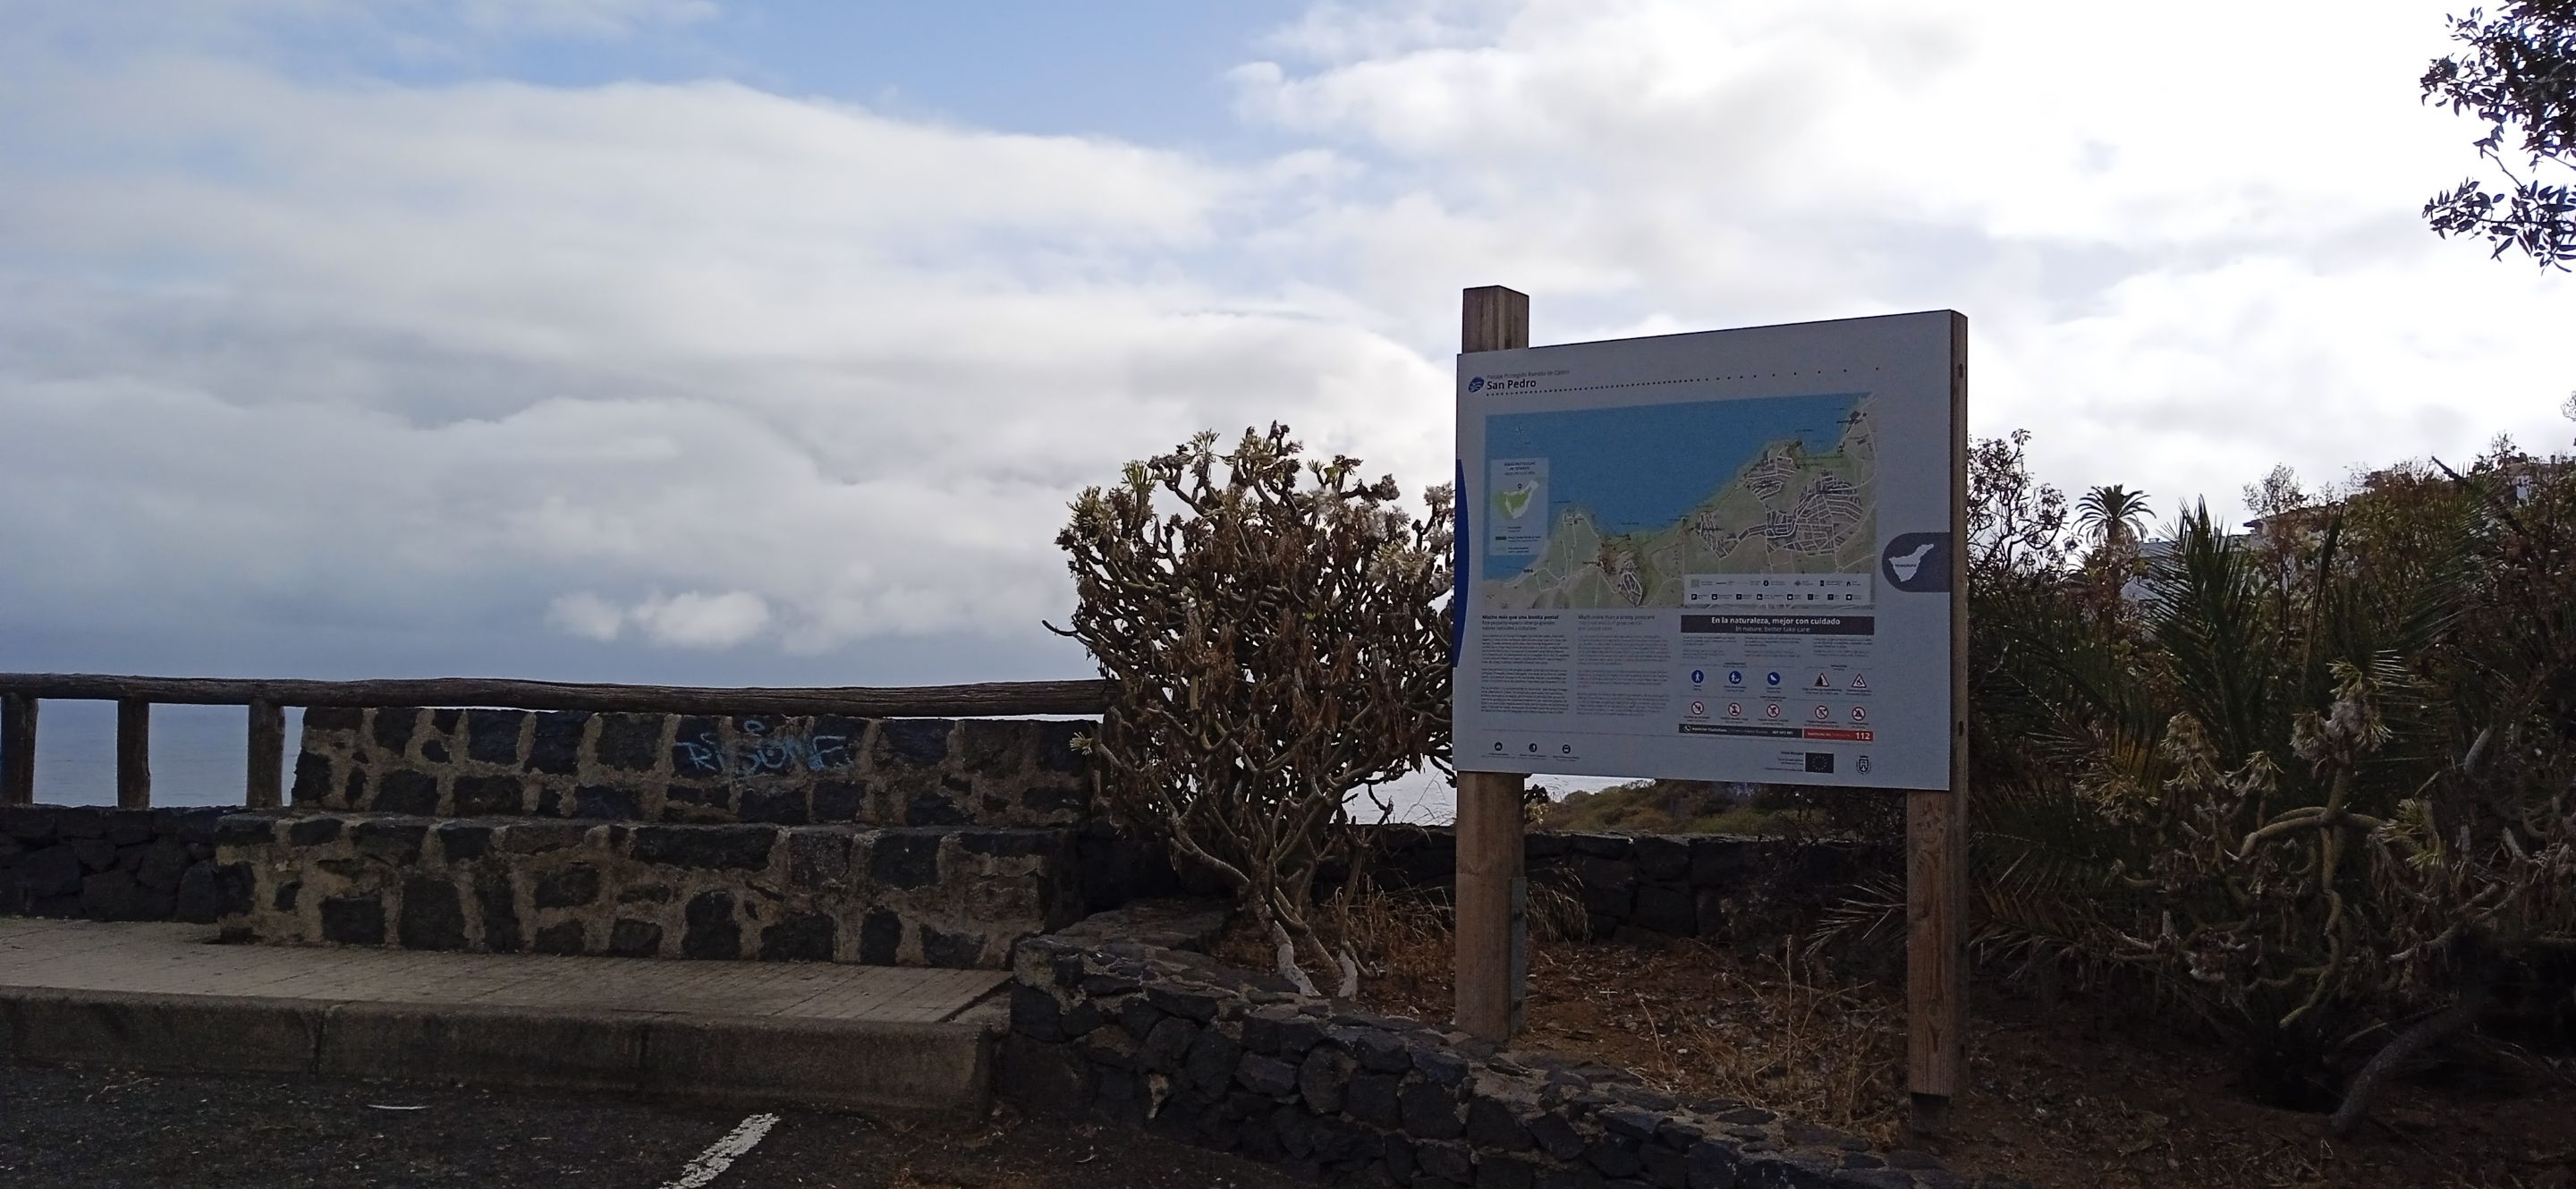 Sendero Rambla de Castro Hive Tenerife PinMapple (2).jpg